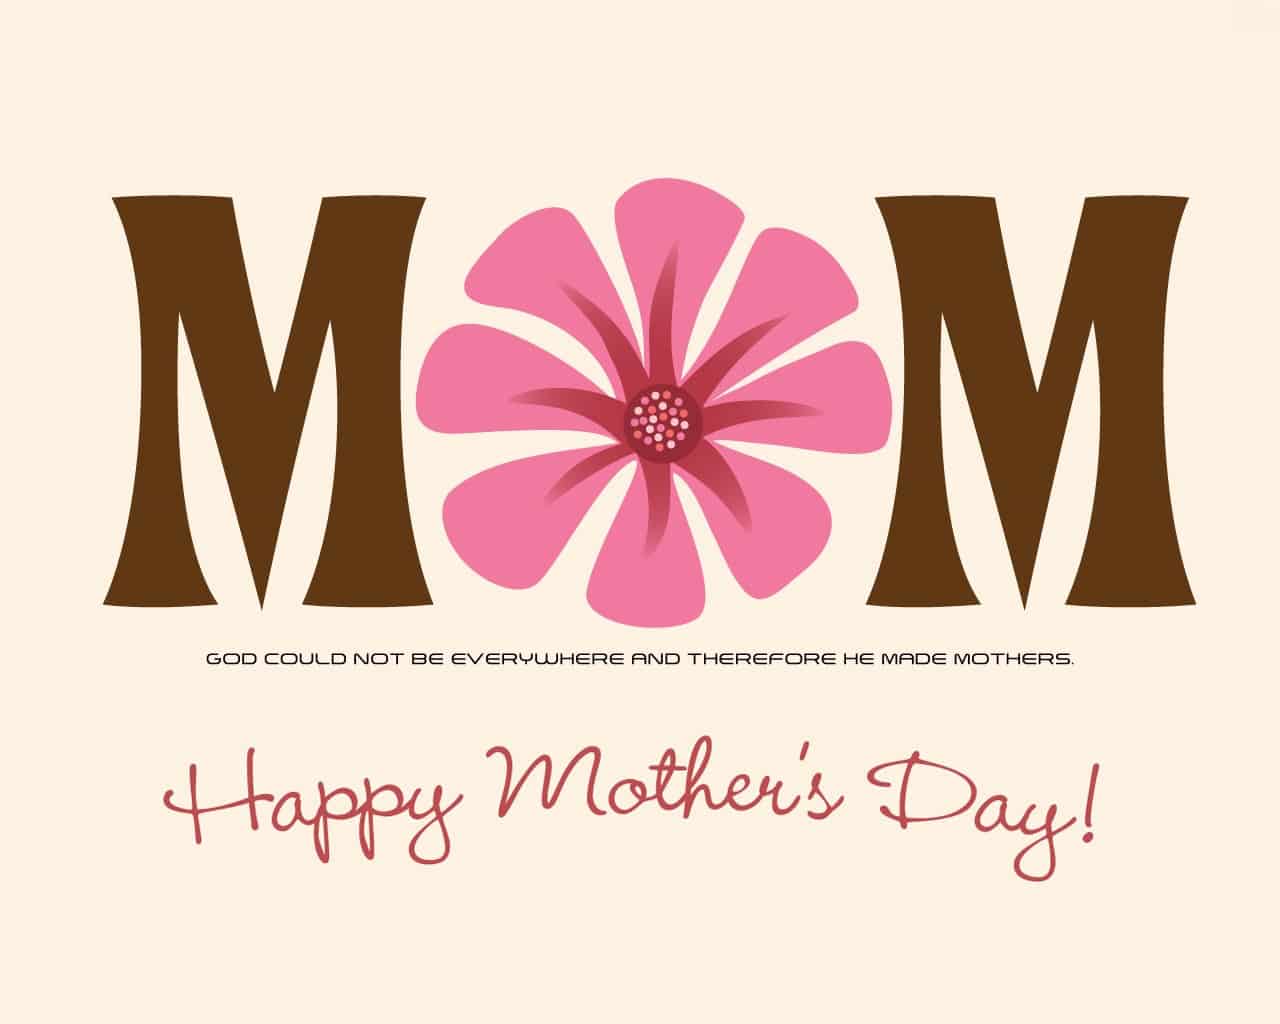 صور وكروت وبطاقات معايدة لعيد الأم - Happy Mother's Day 2020 50